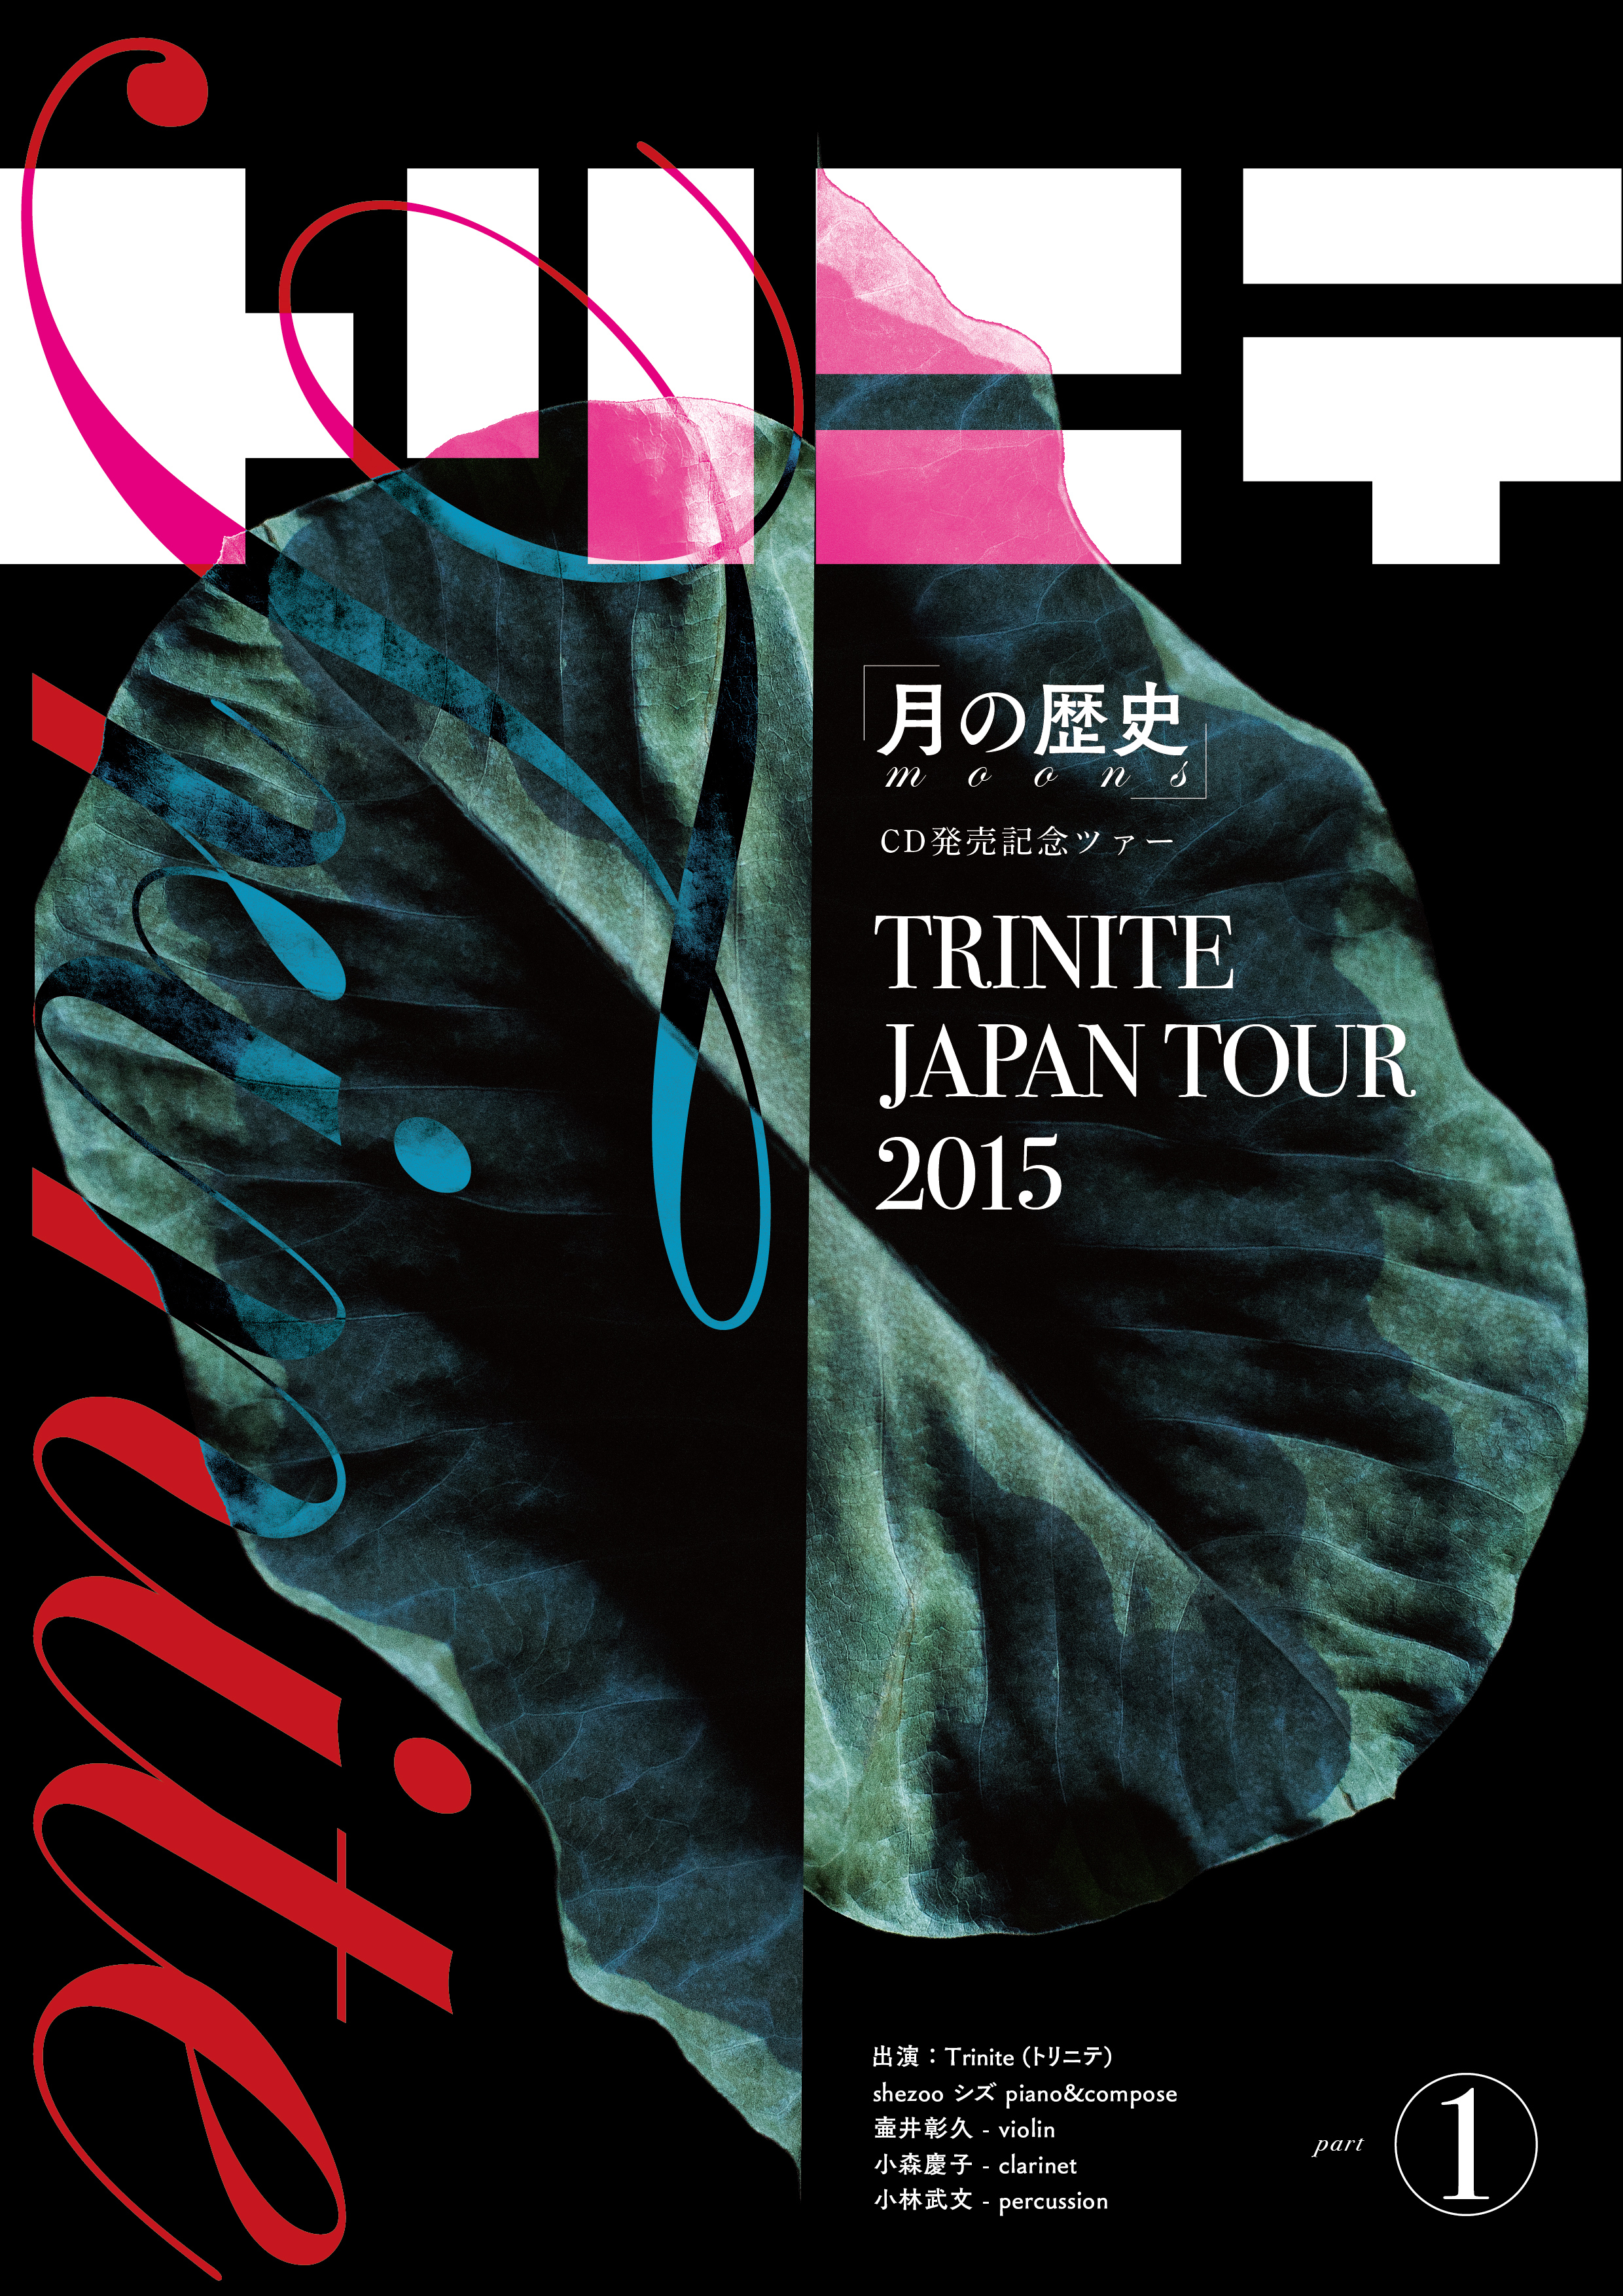 Trinite Japan Tour 2015 part1